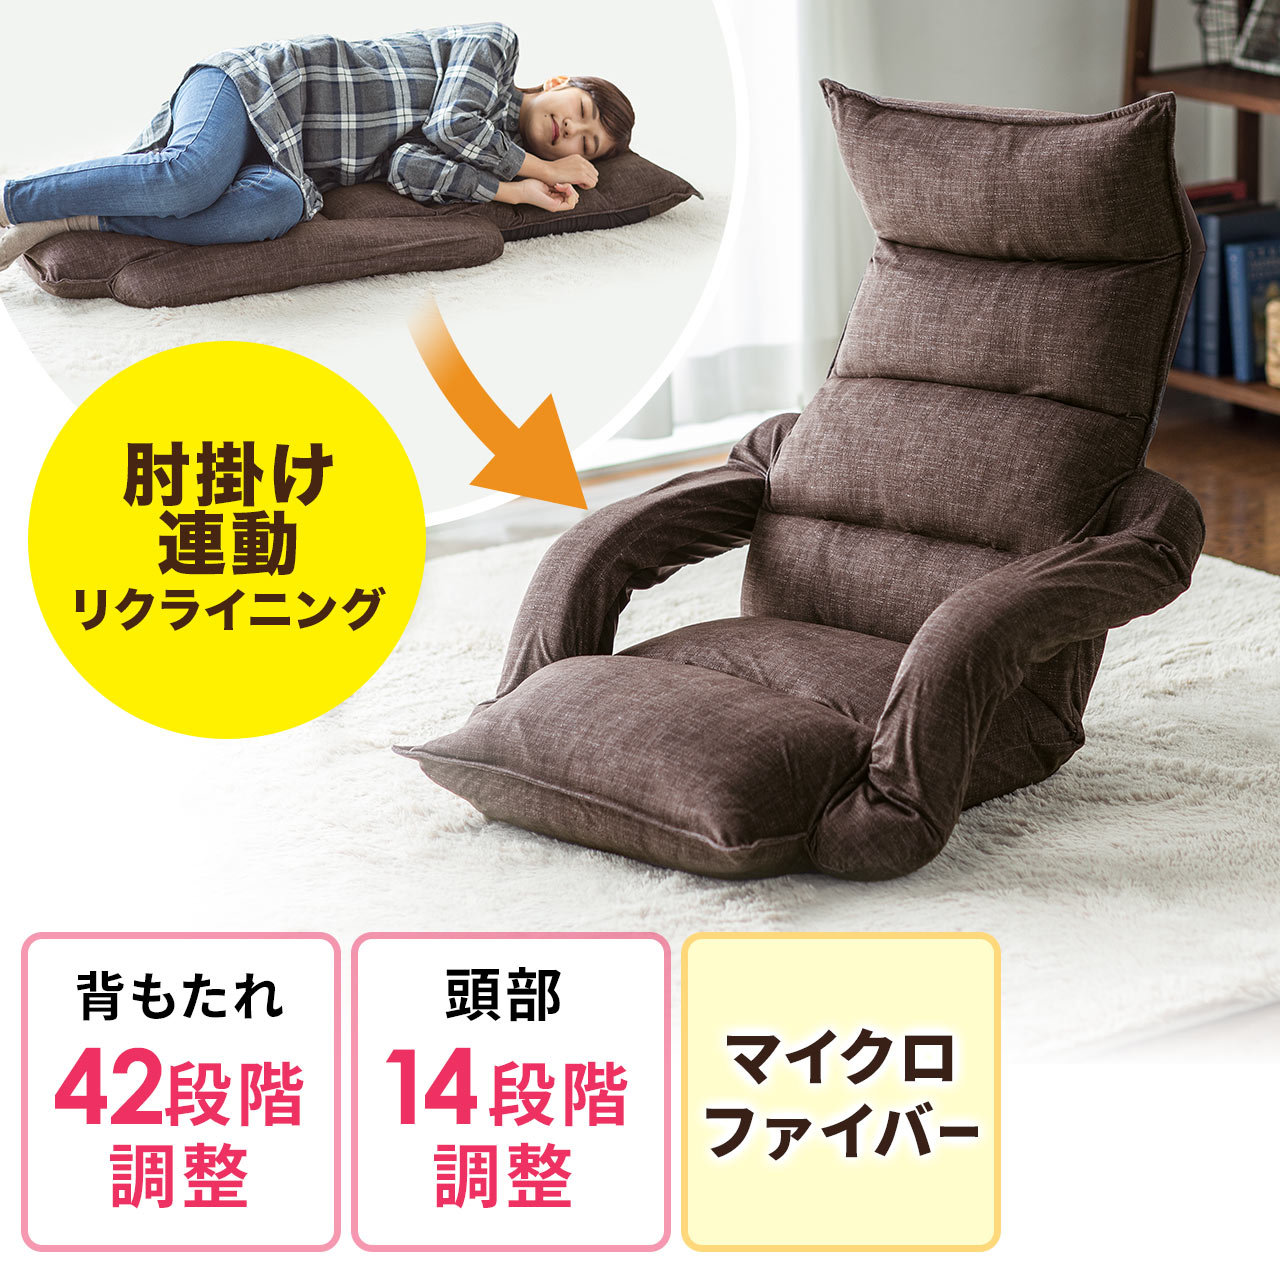 限定品新品数量・日本製座椅子42段階リクライニング背もたれが高めでリラックスできます 座椅子